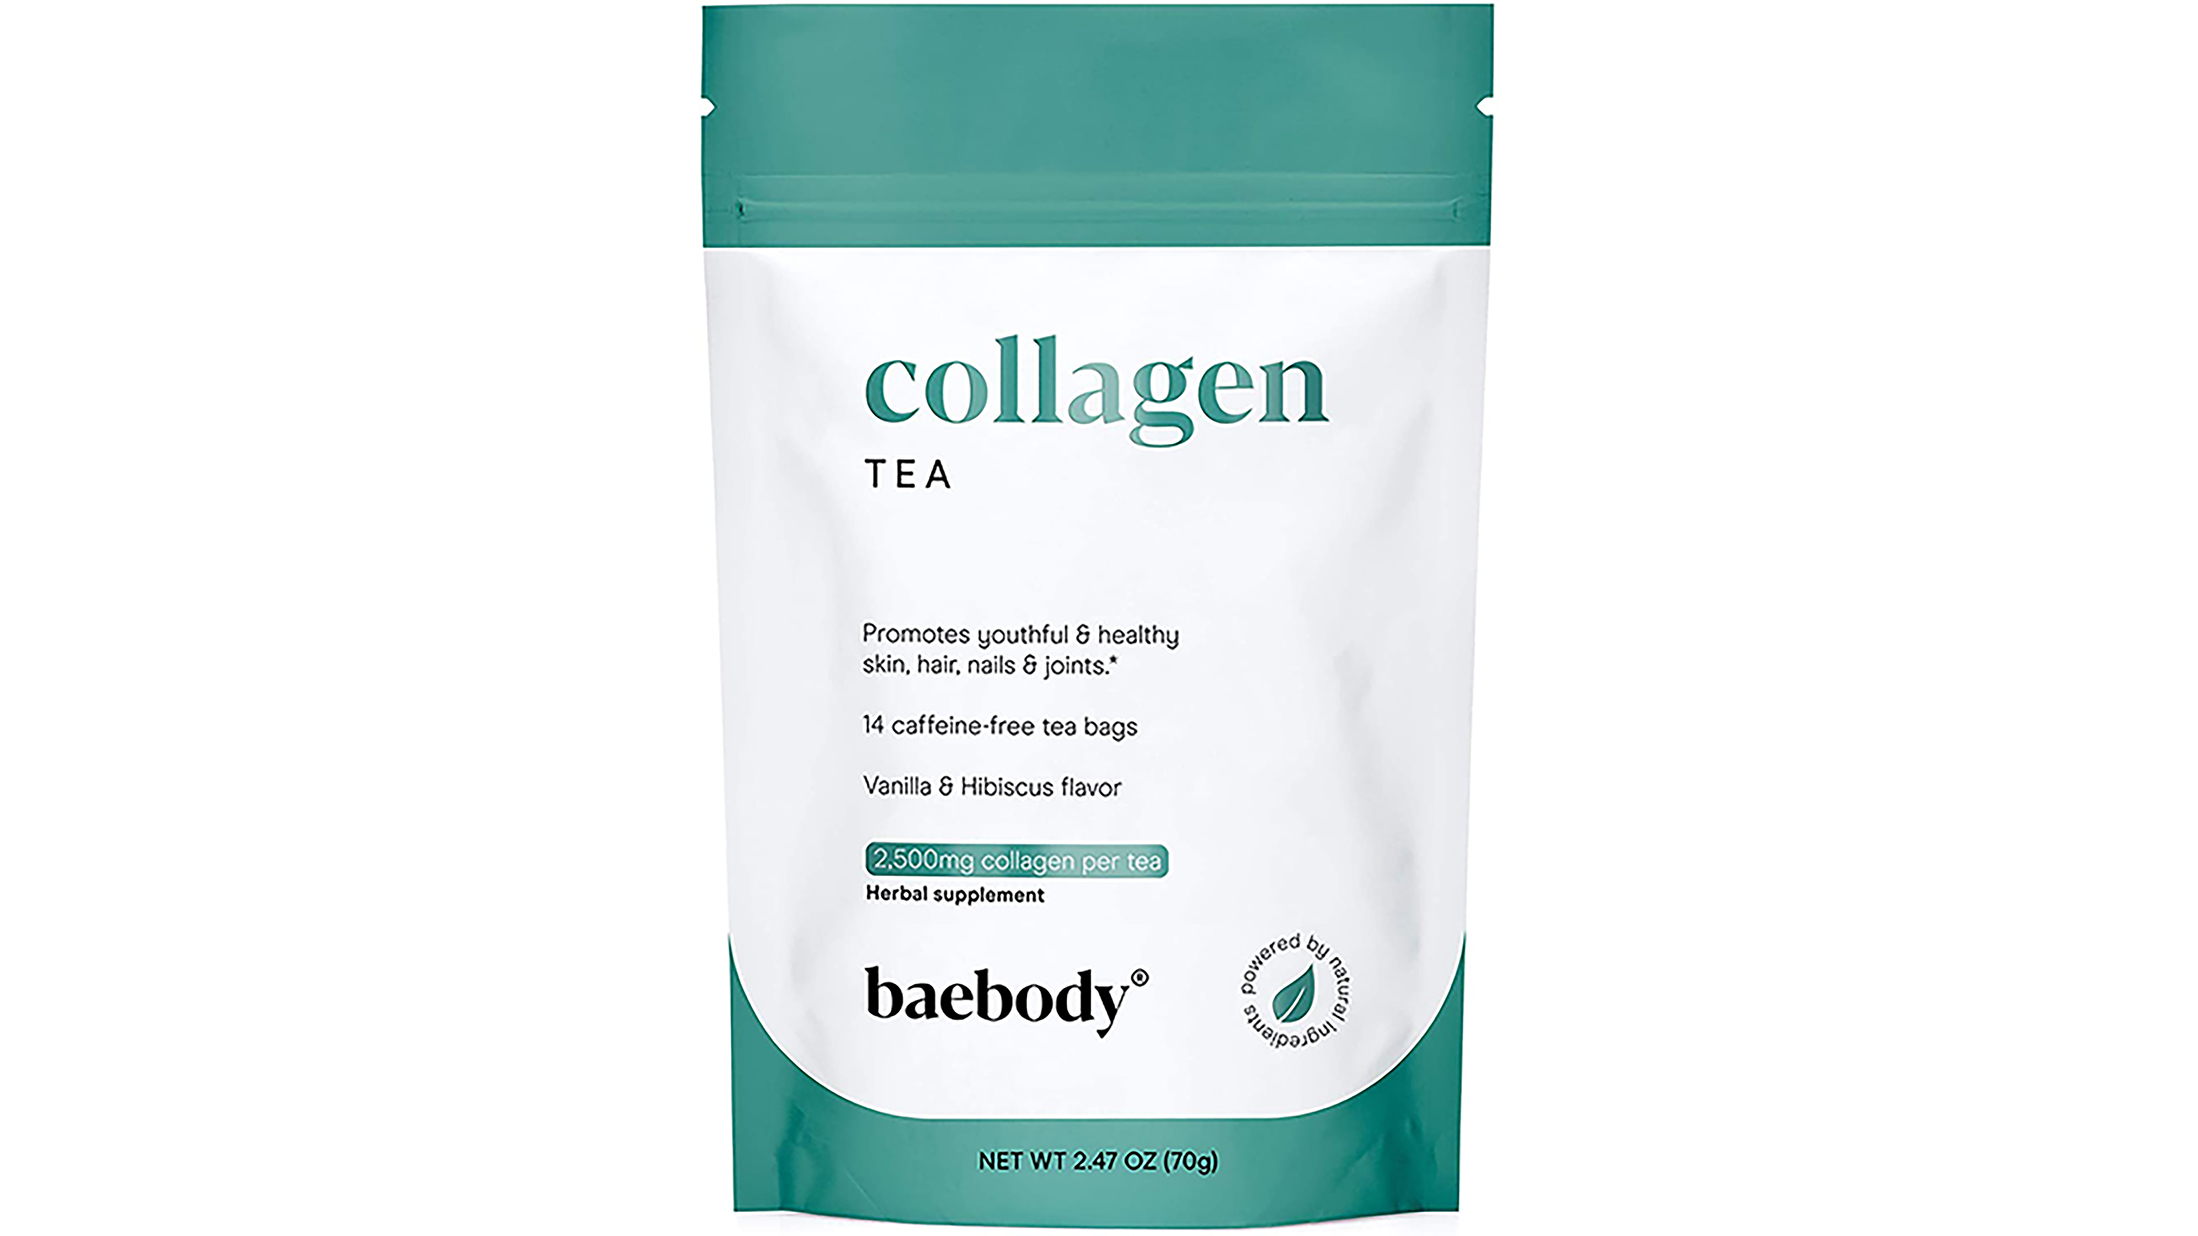 Baebody collagen tea